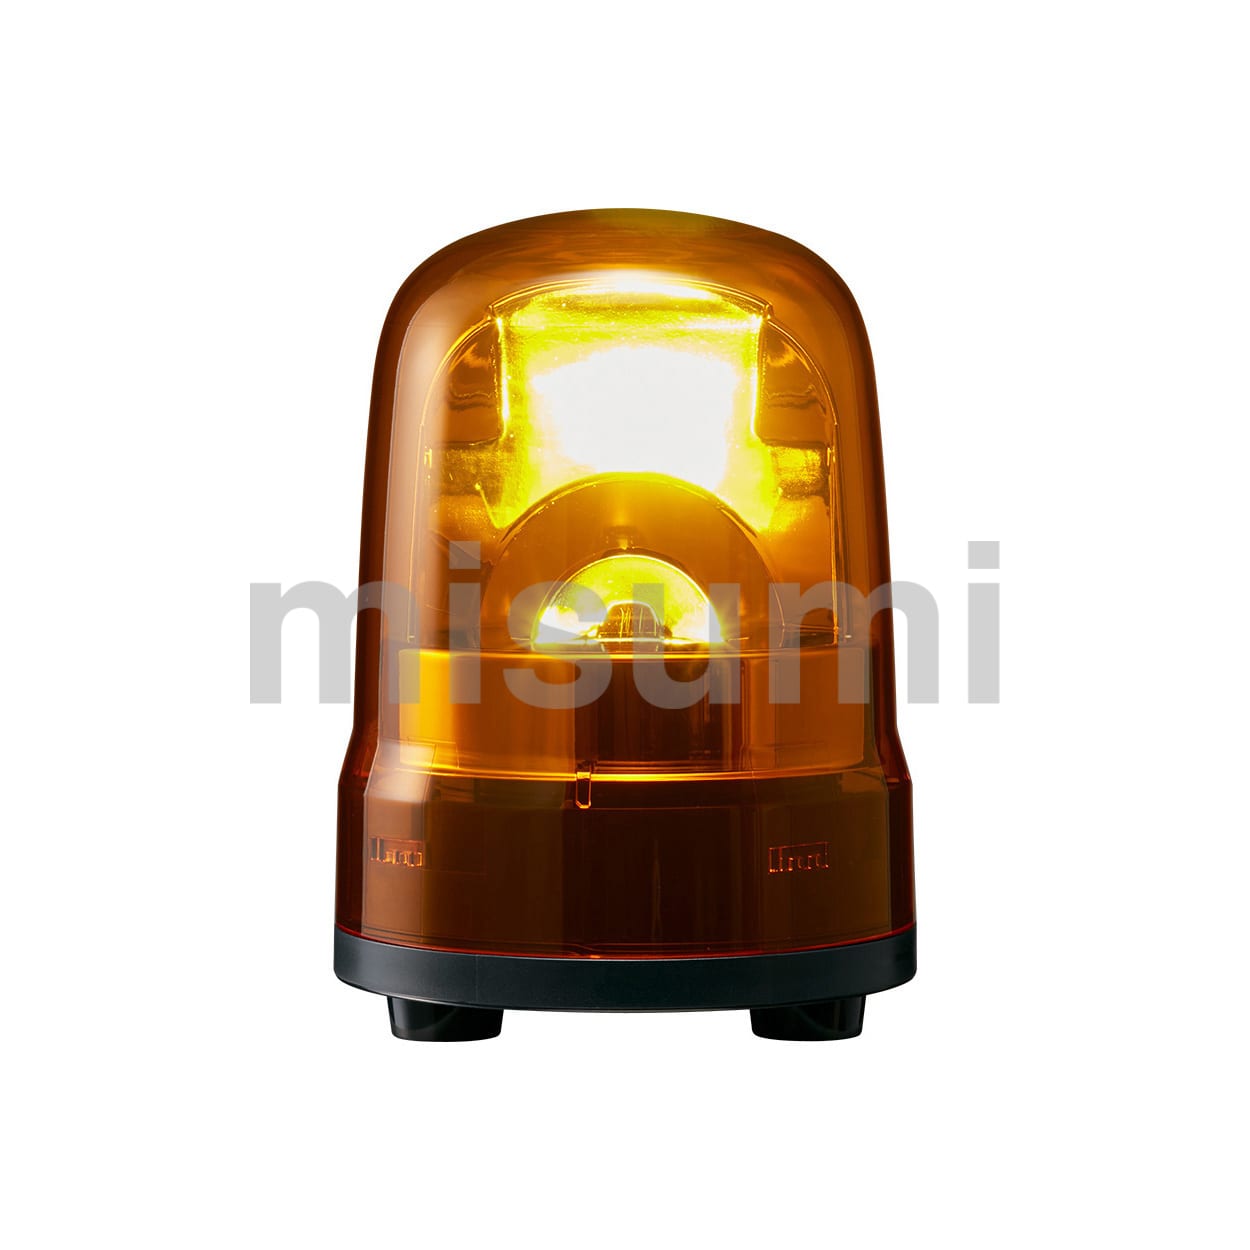 AC100V ＬＥＤ回転灯(ブザー付 黄色)のは照明器具です。 AC100V ＬＥＤ回転灯(ブザー付 黄色) - 1